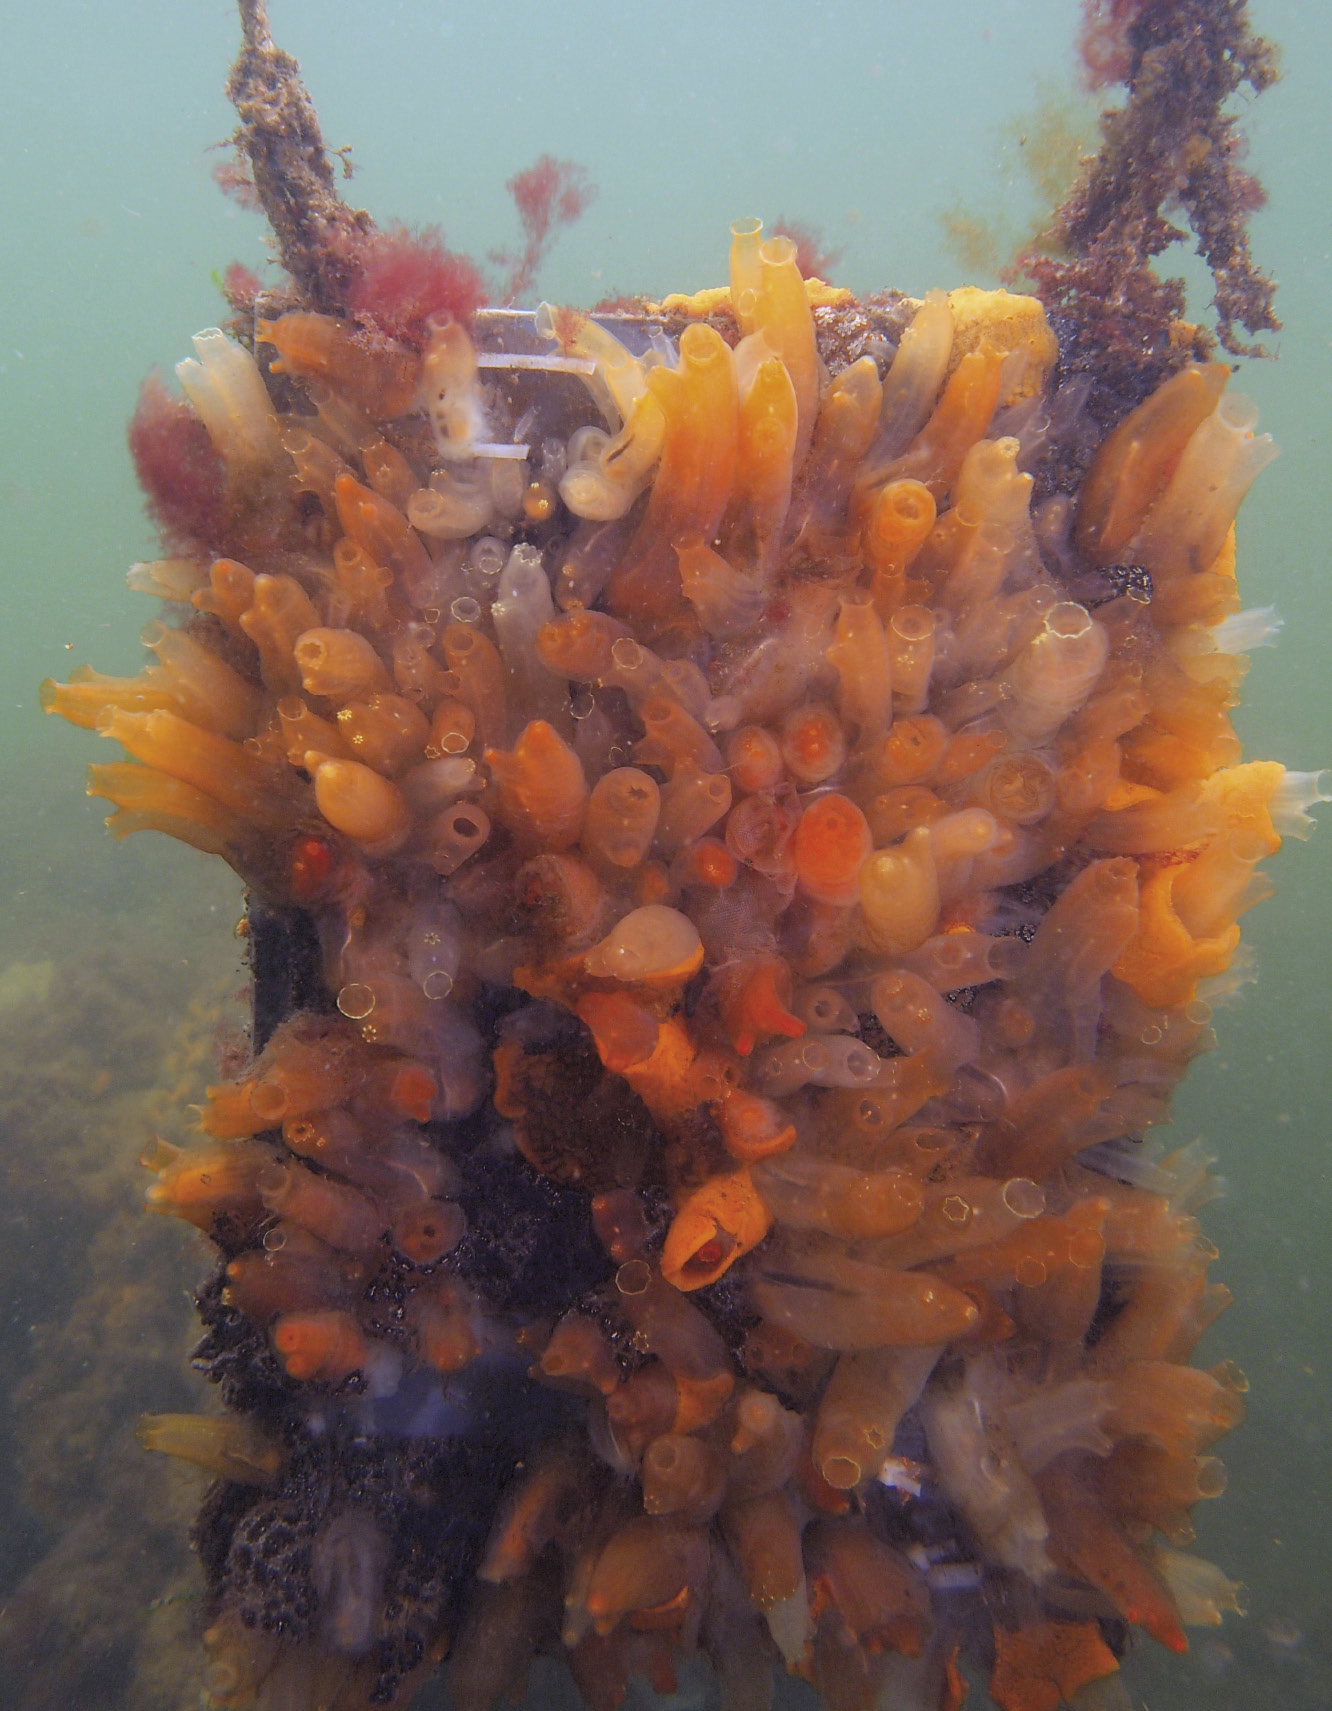 Tuniciers envahissants adhérant à une structure expérimentale submergée